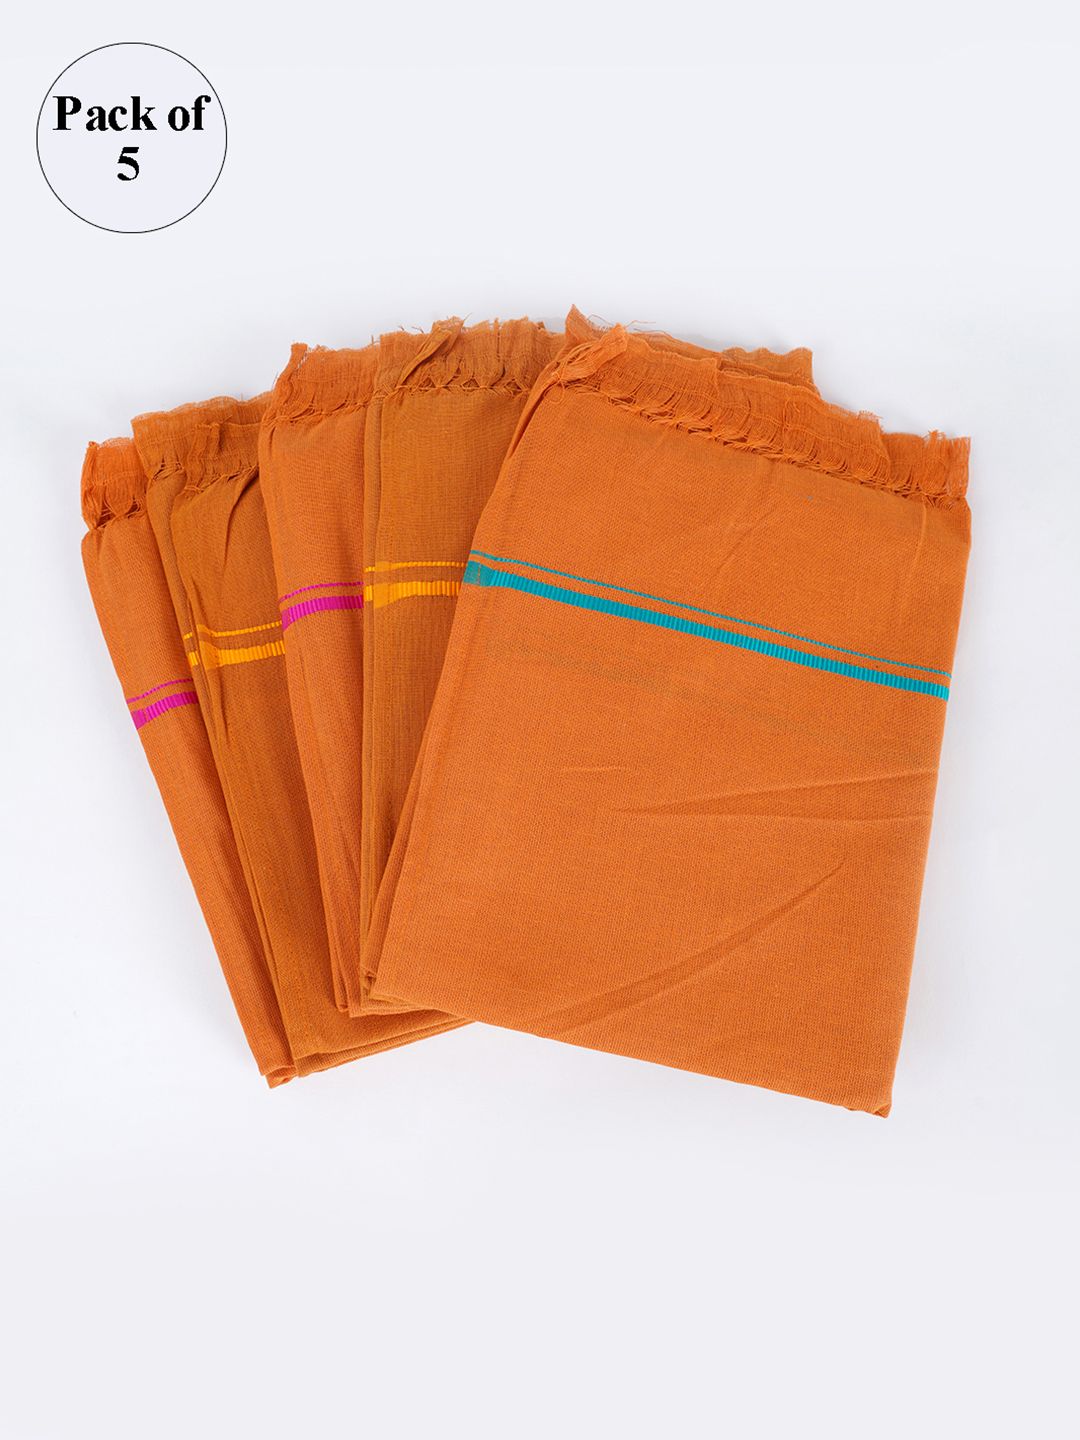 Ramraj Pack of 5 Orange Solid Cotton Towel Set Price in India